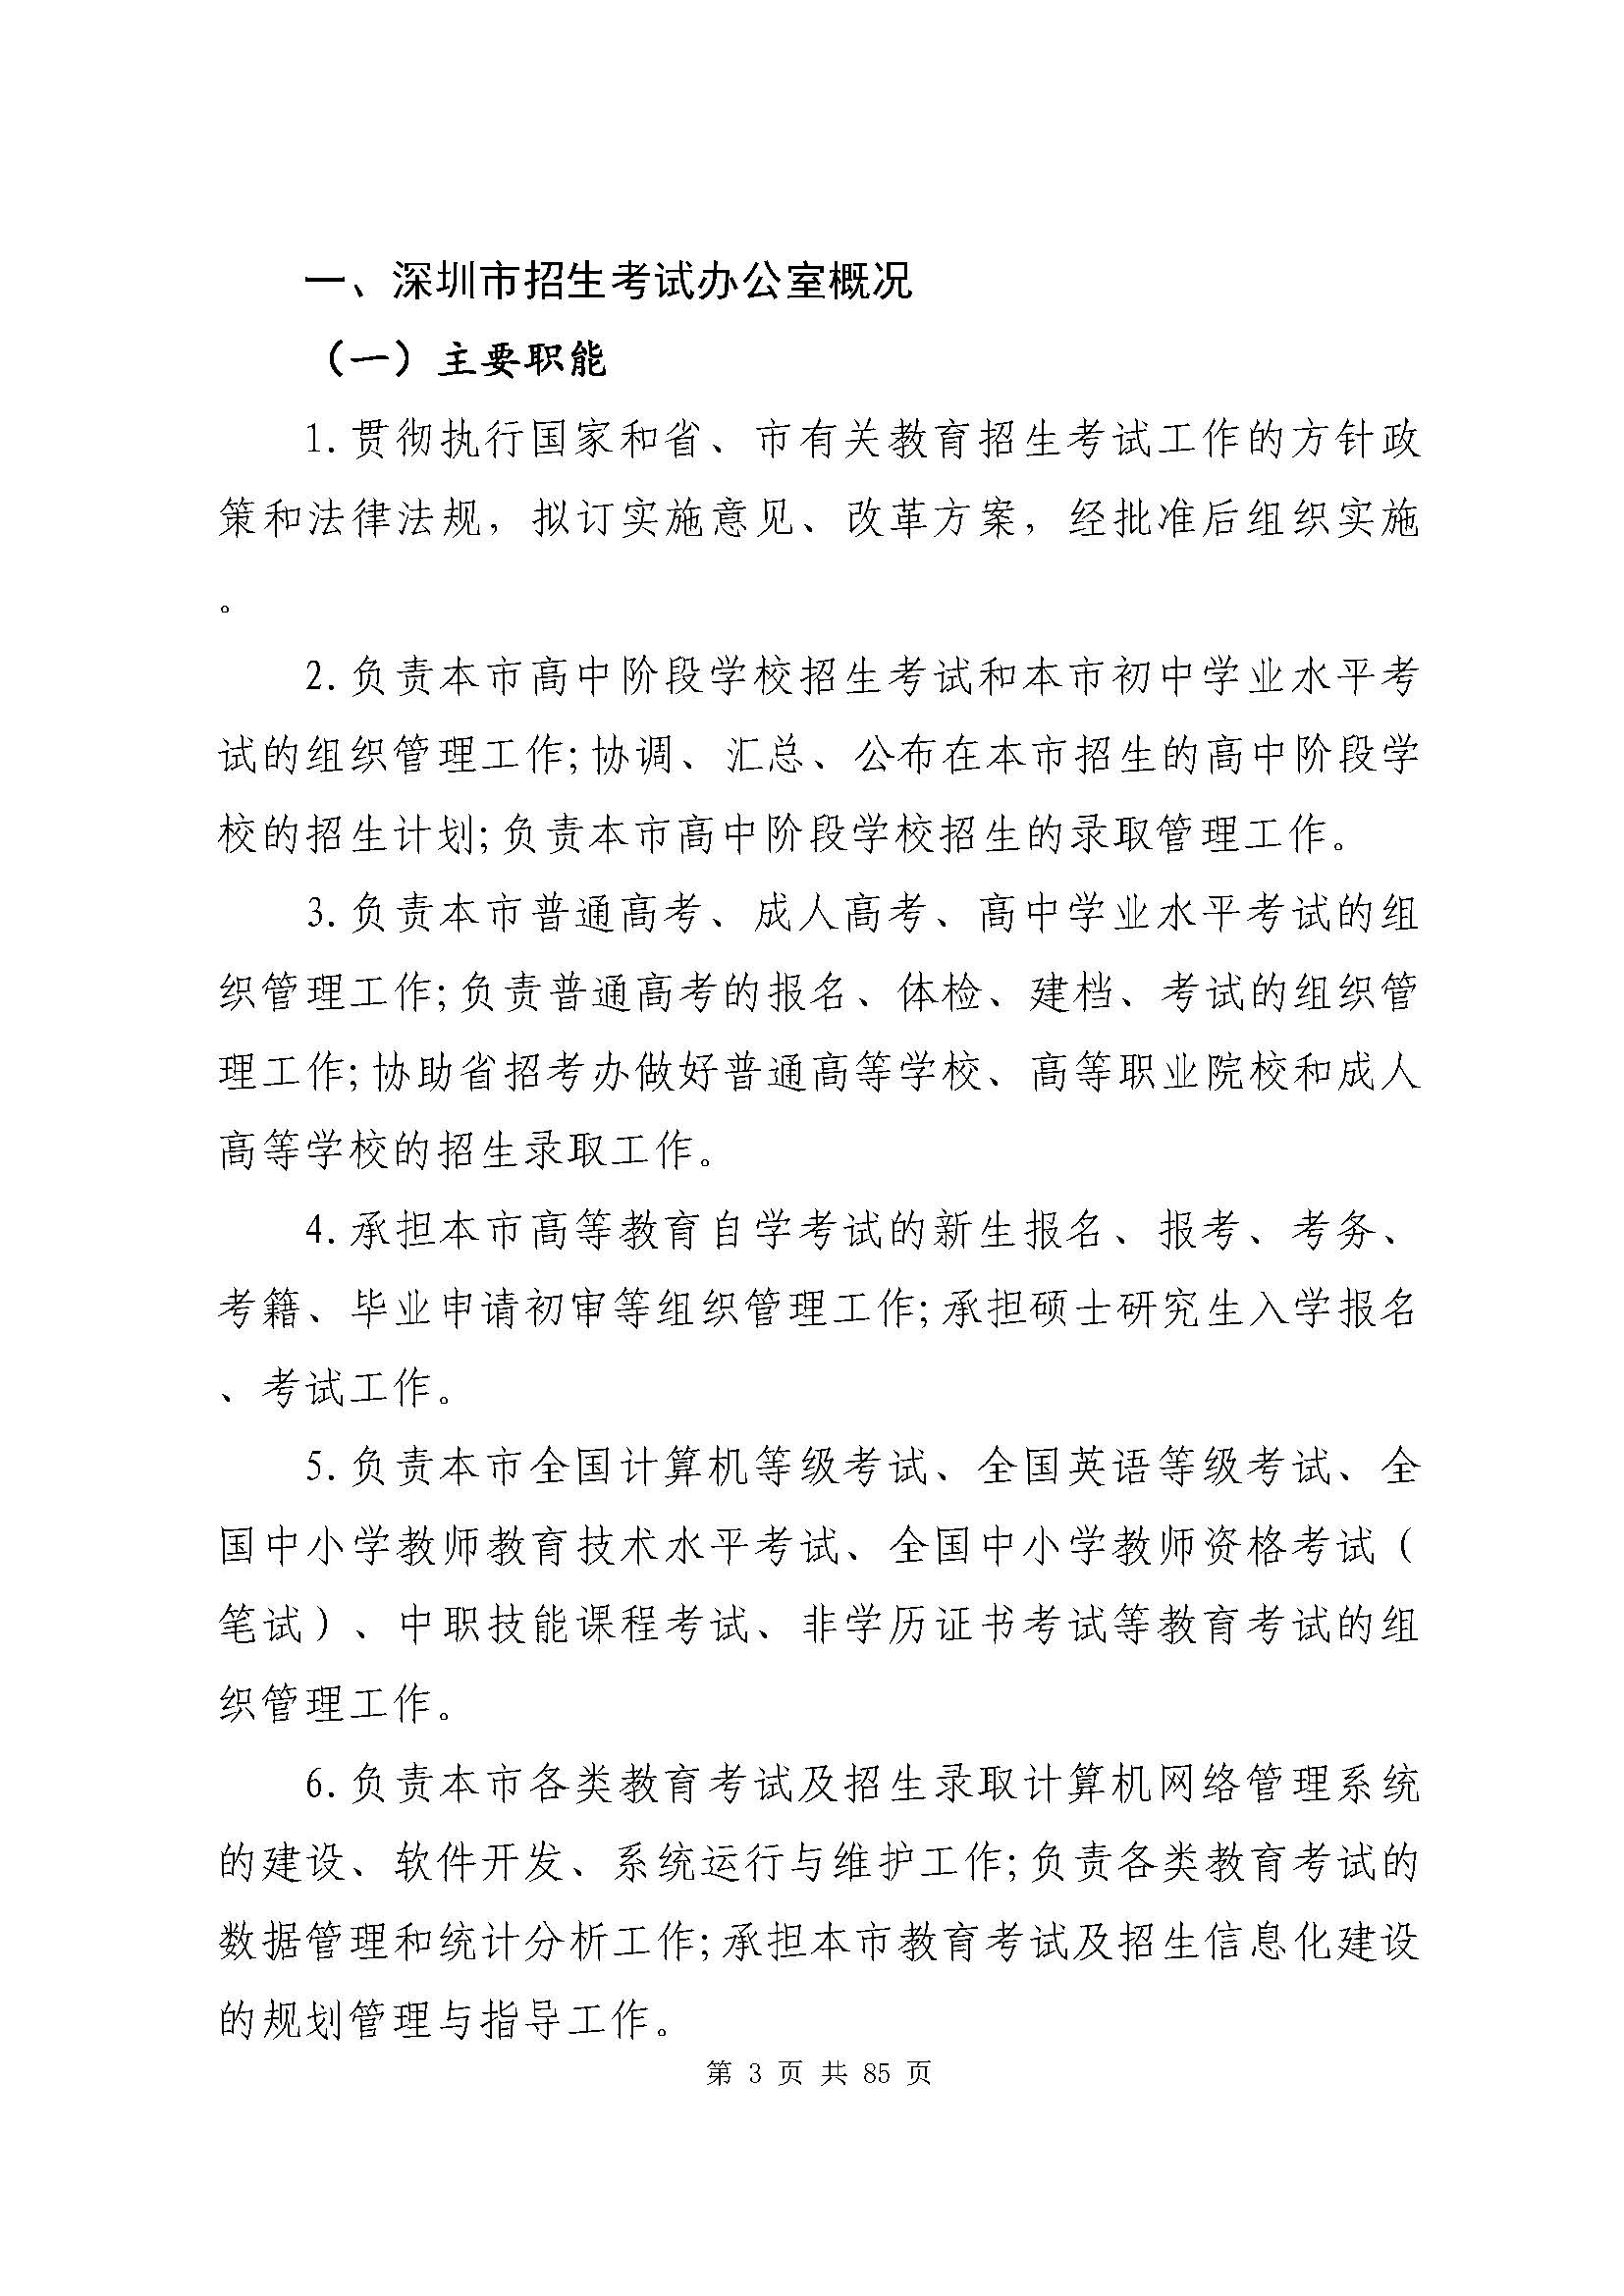 深圳市招生考试办公室2020年度部门决算_页面_04.jpg